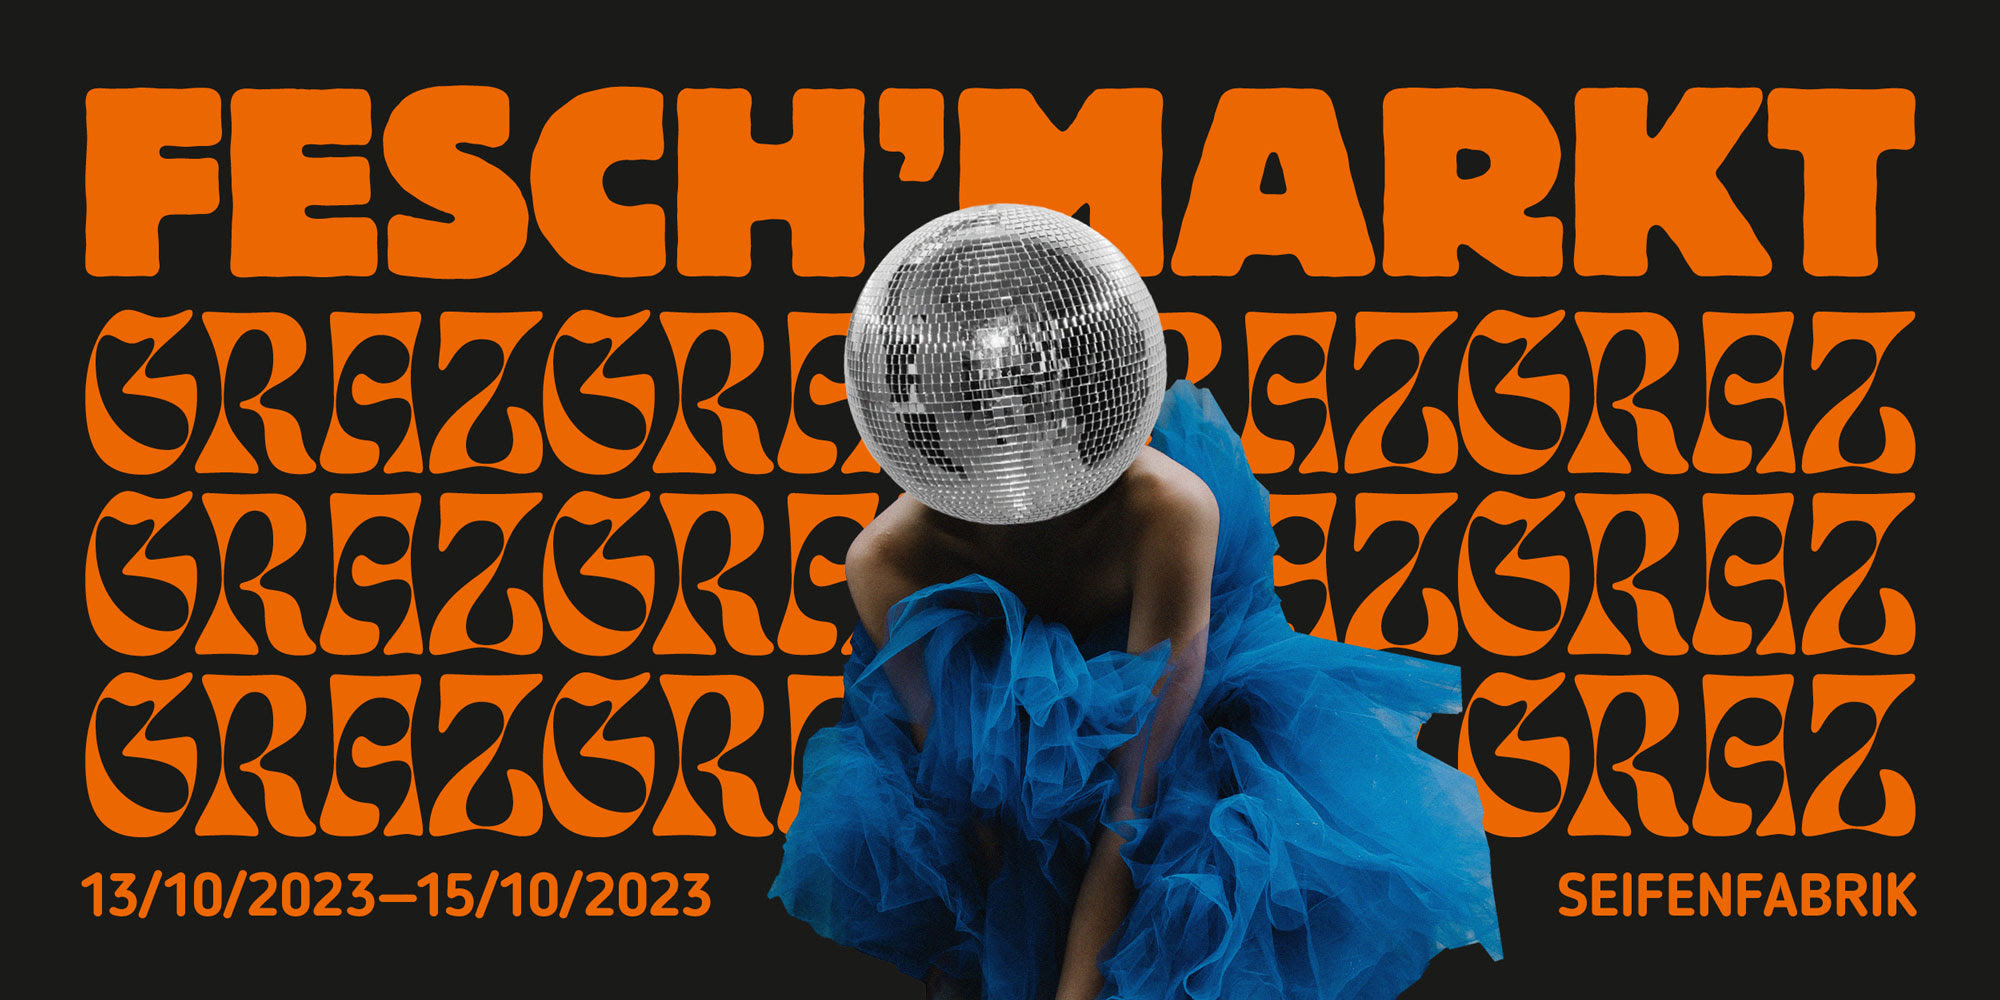 Feschmarkt Graz #20 am 13. October 2023 @ Seifenfabrik/Fachwerkhalle.